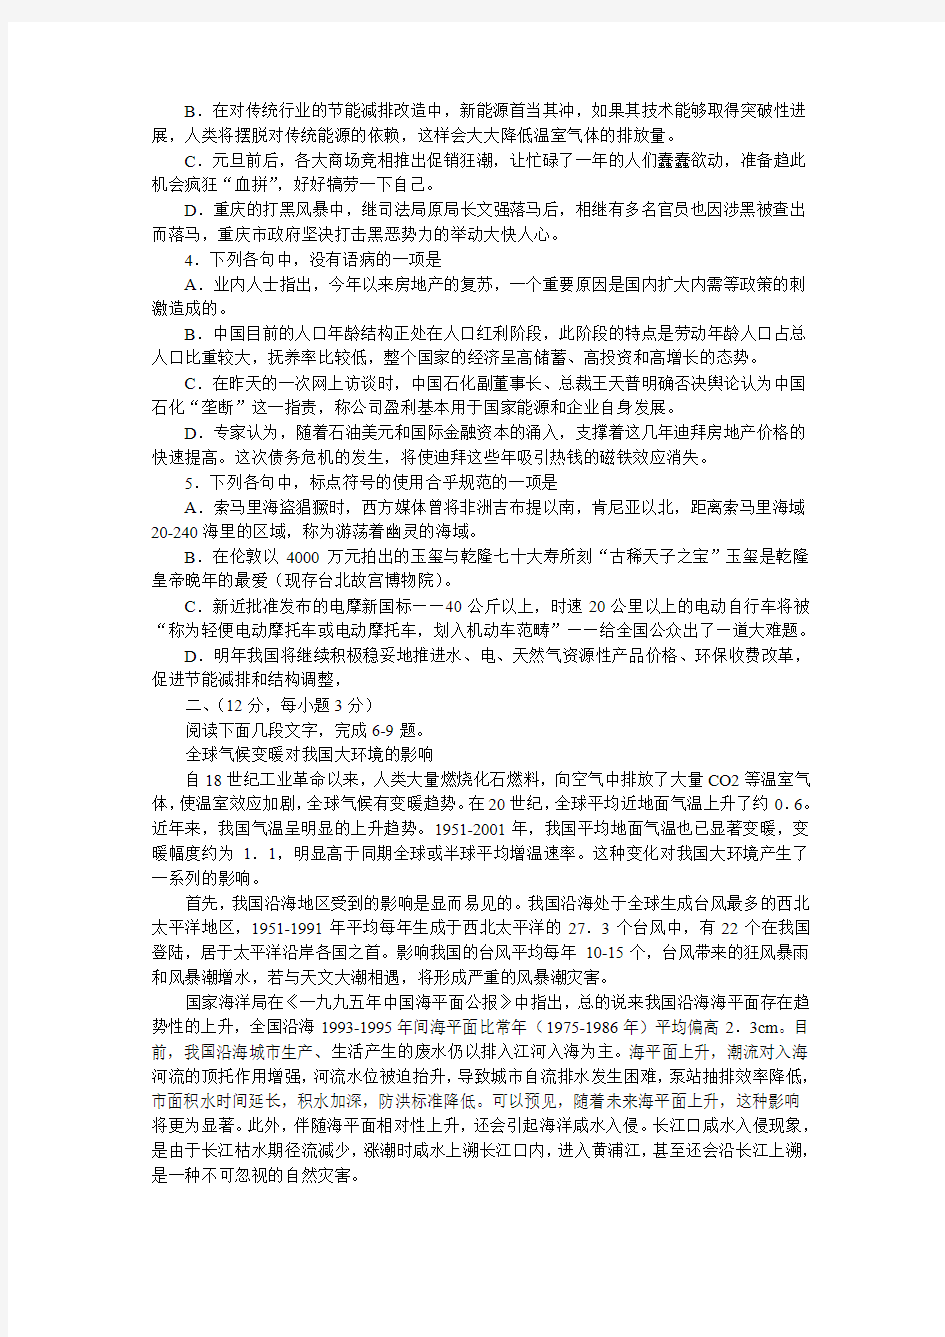 2010年高考模拟试题(123)黄冈市高三调研统一测试